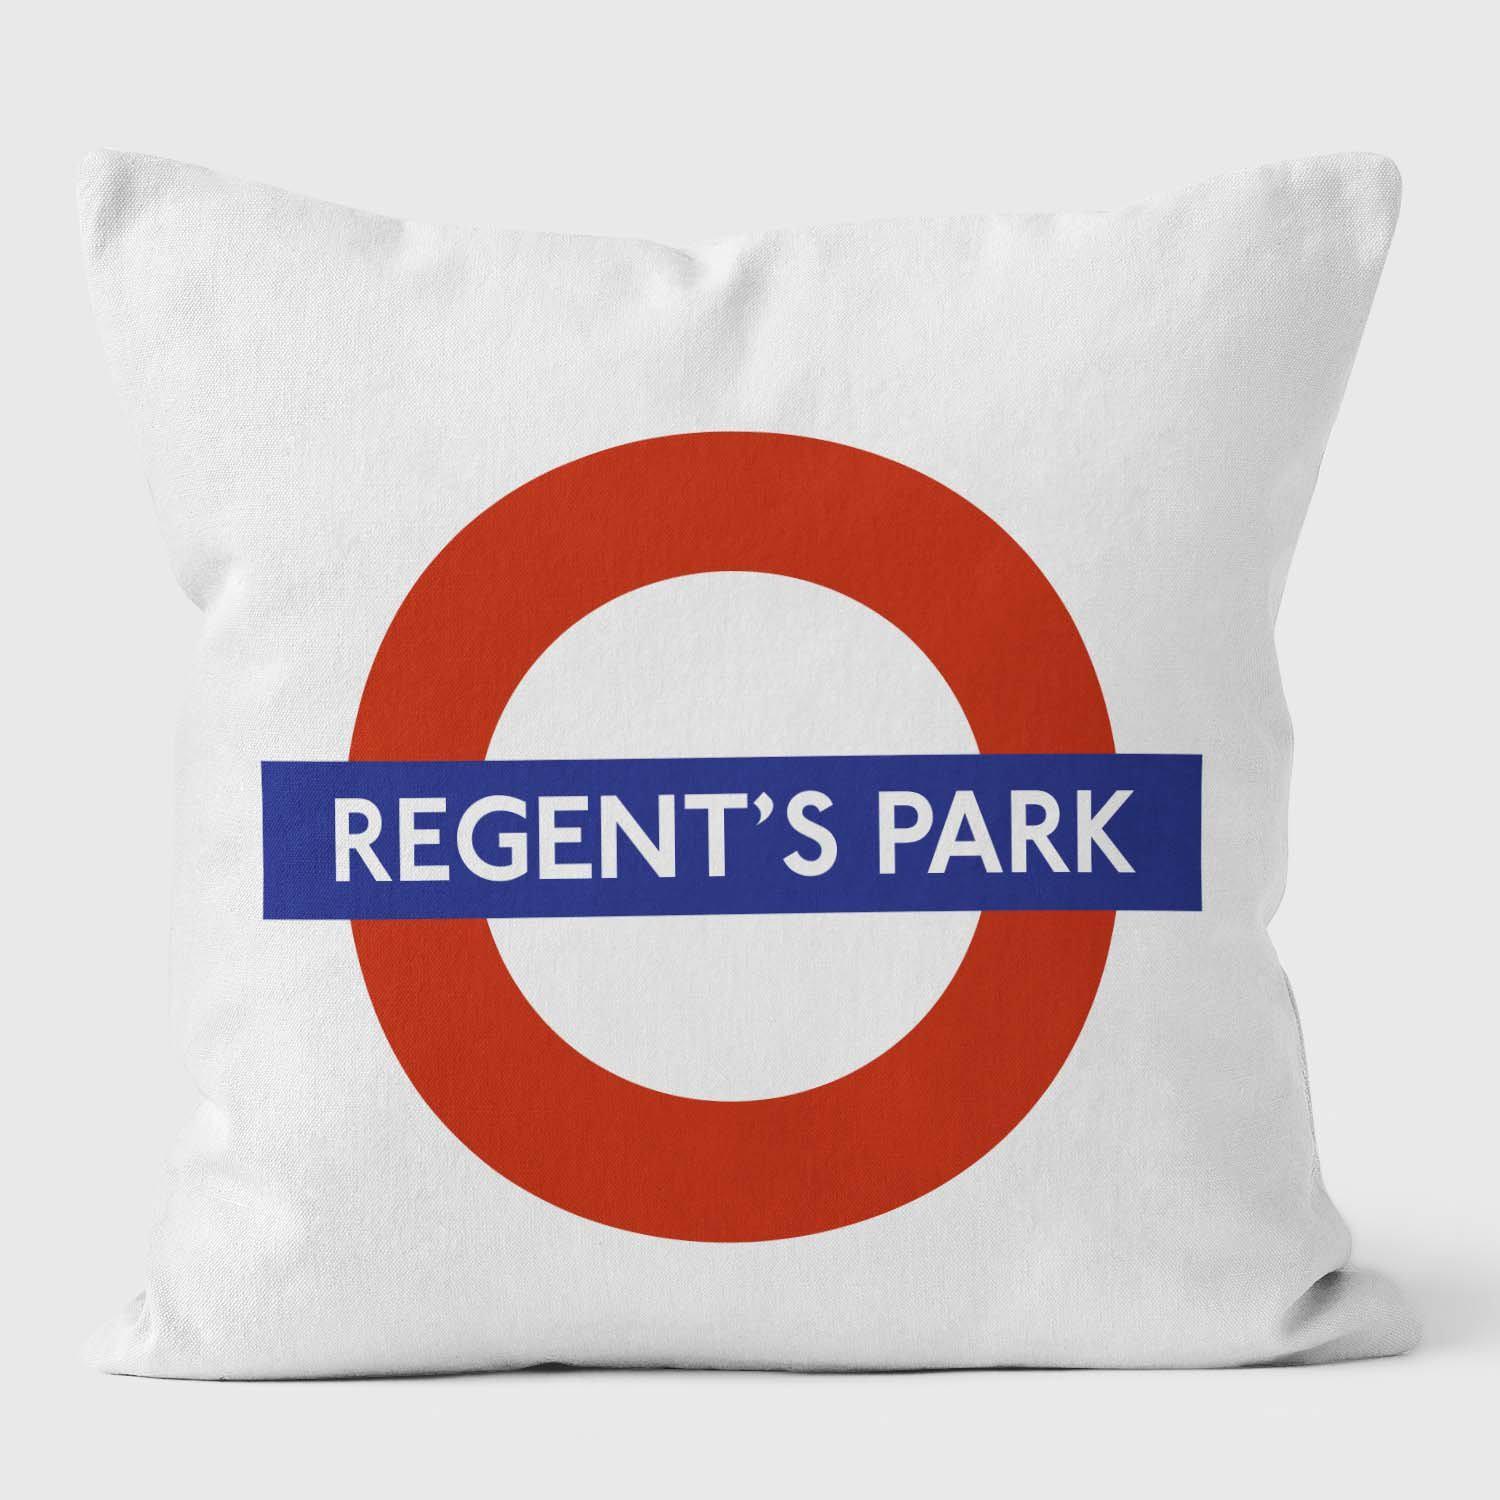 Regents Park London Underground Tube Station Roundel Cushion - Handmade Cushions UK - WeLoveCushions